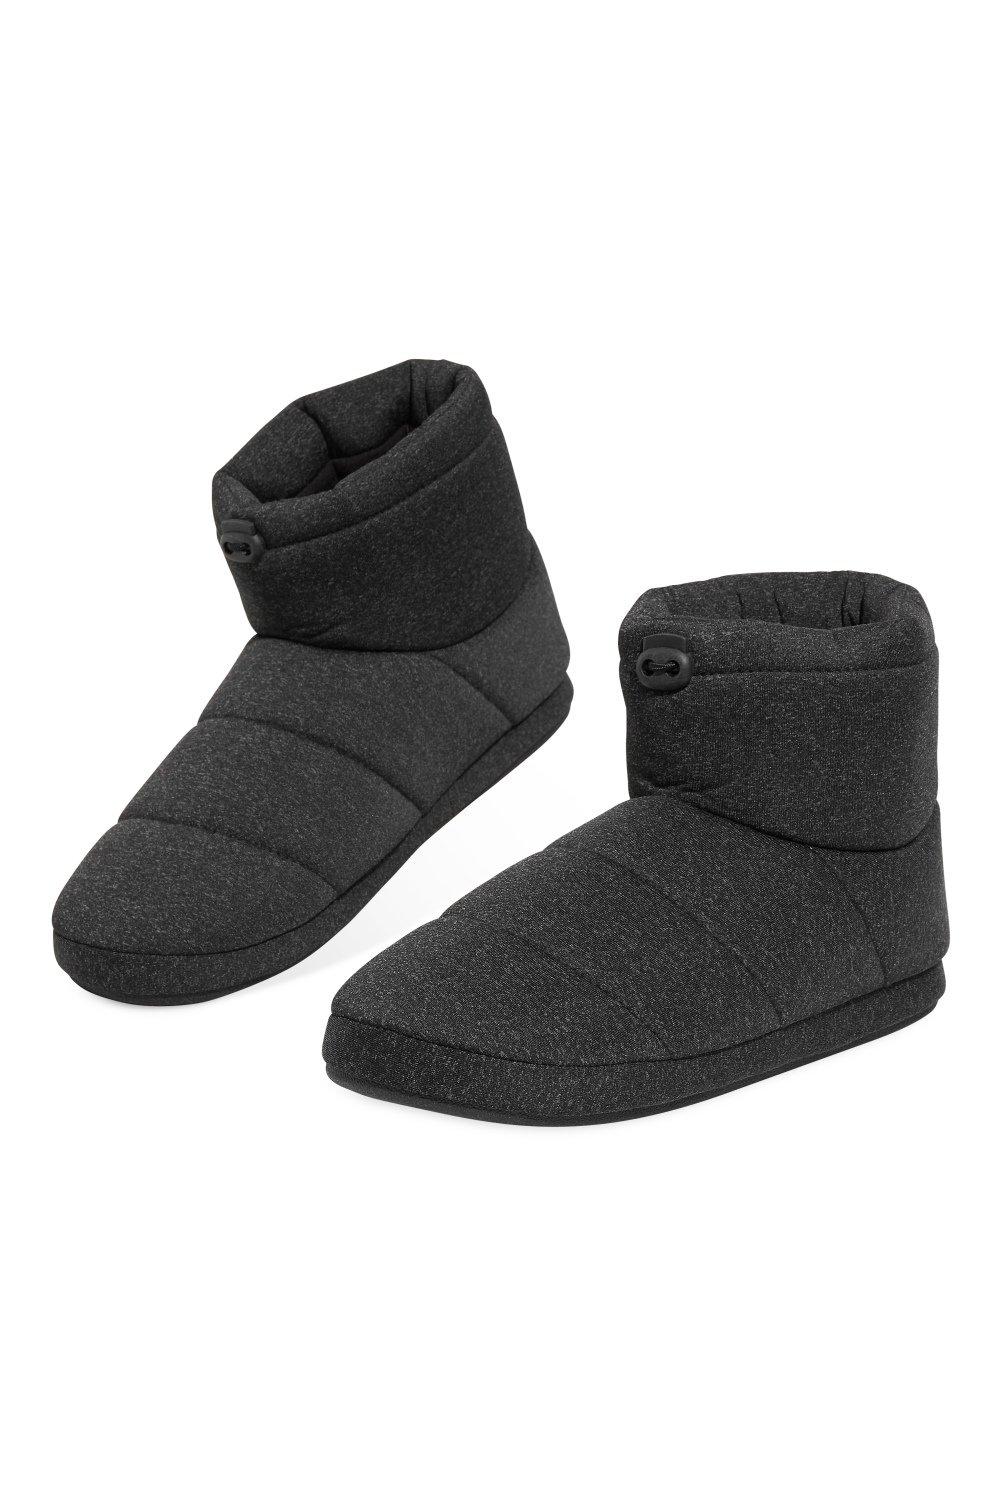 Тапочки-сапожки Dunlop, черный модные зимние домашние тапочки милые домашние меховые тапочки one word женские зимние домашние теплые пушистые тапочки